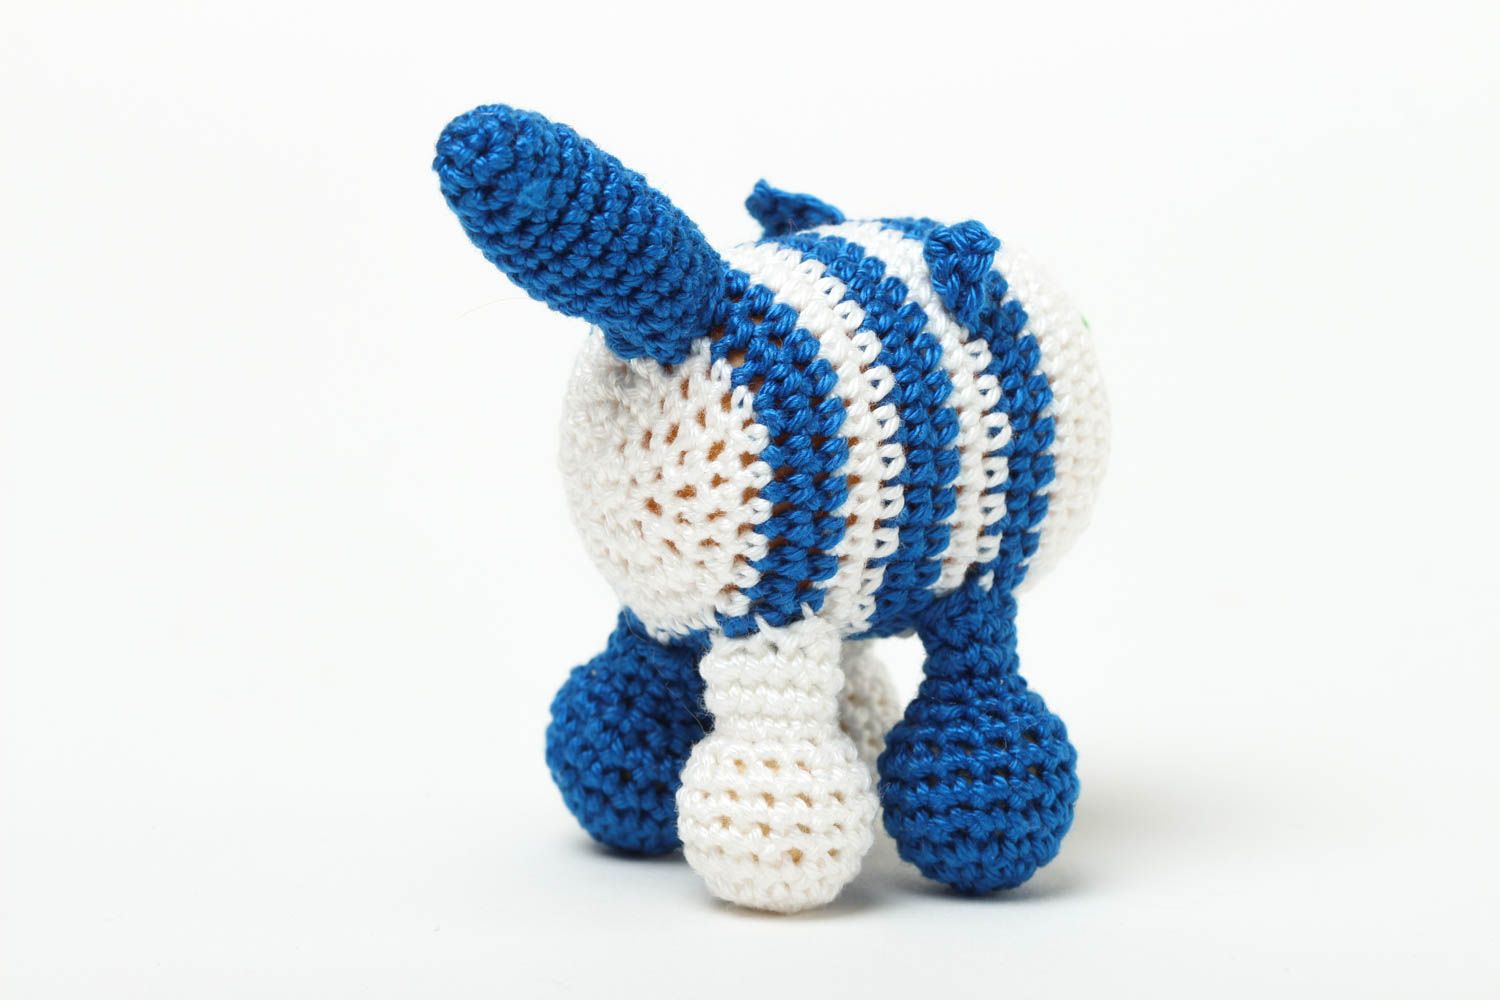 Rattle toy for babies handmade crocheted stuffed toys nursery decor ideas photo 4